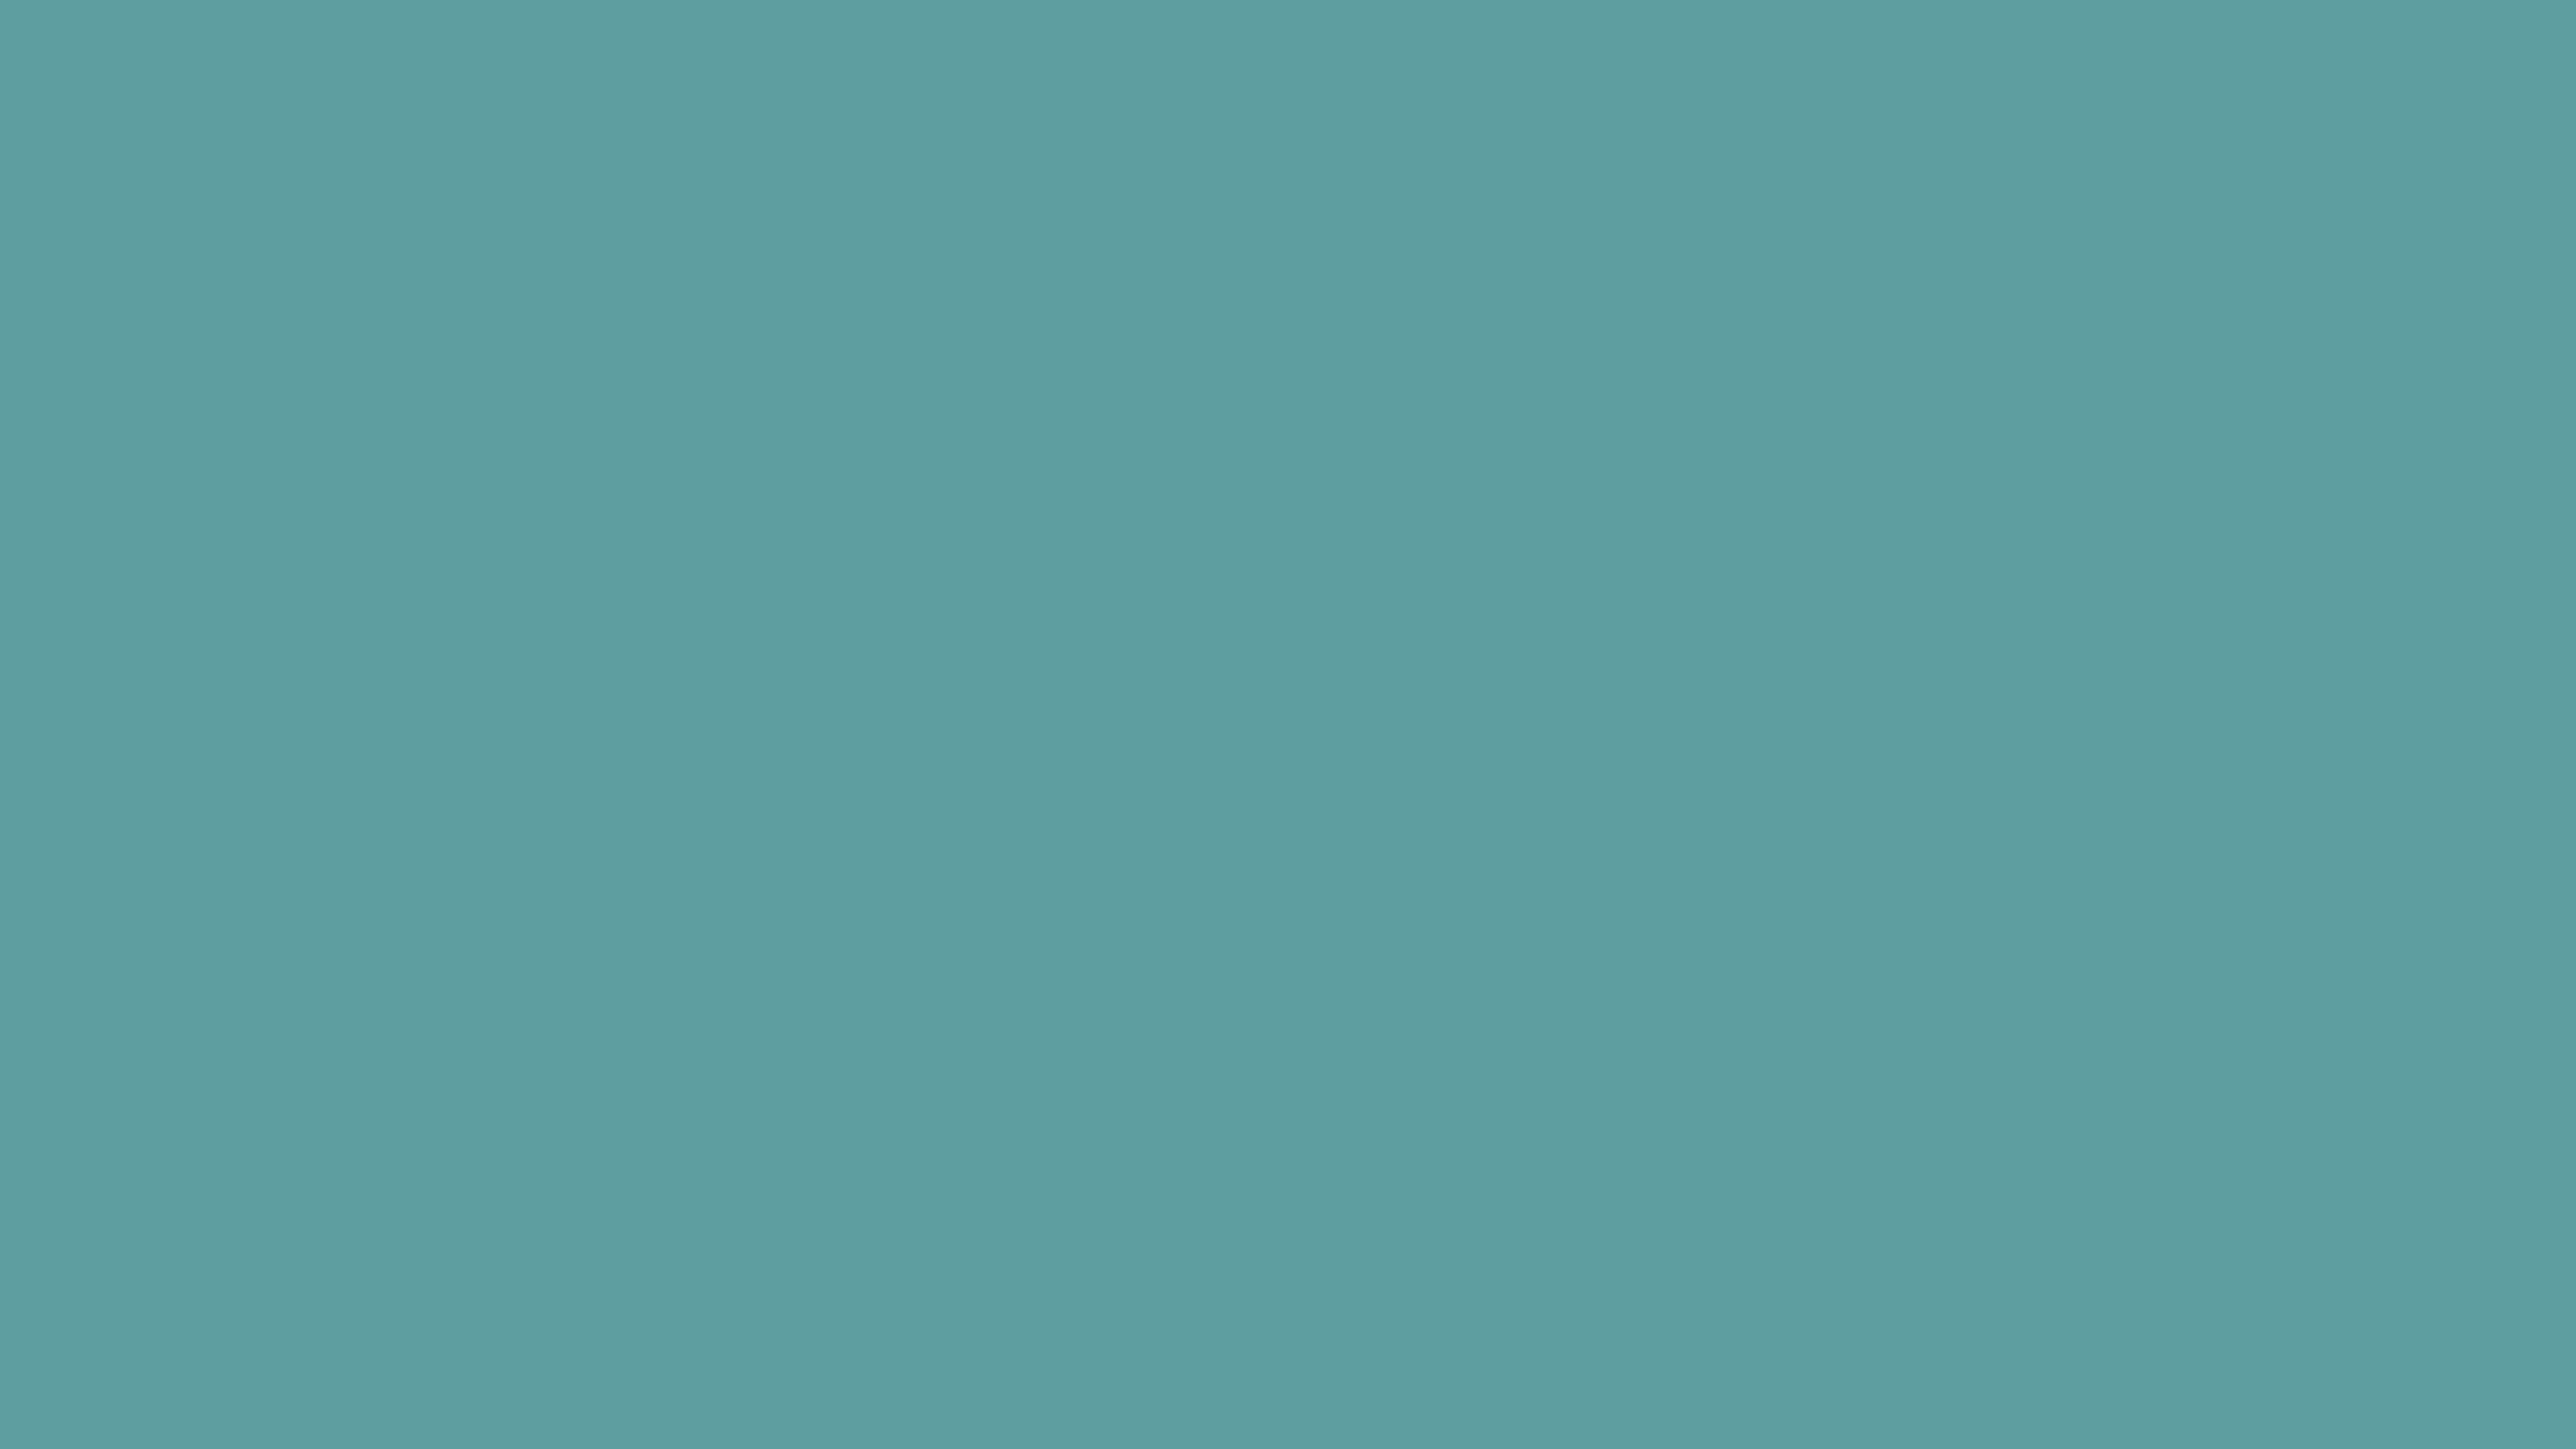 4096x2304 Cadet Blue Solid Color Background